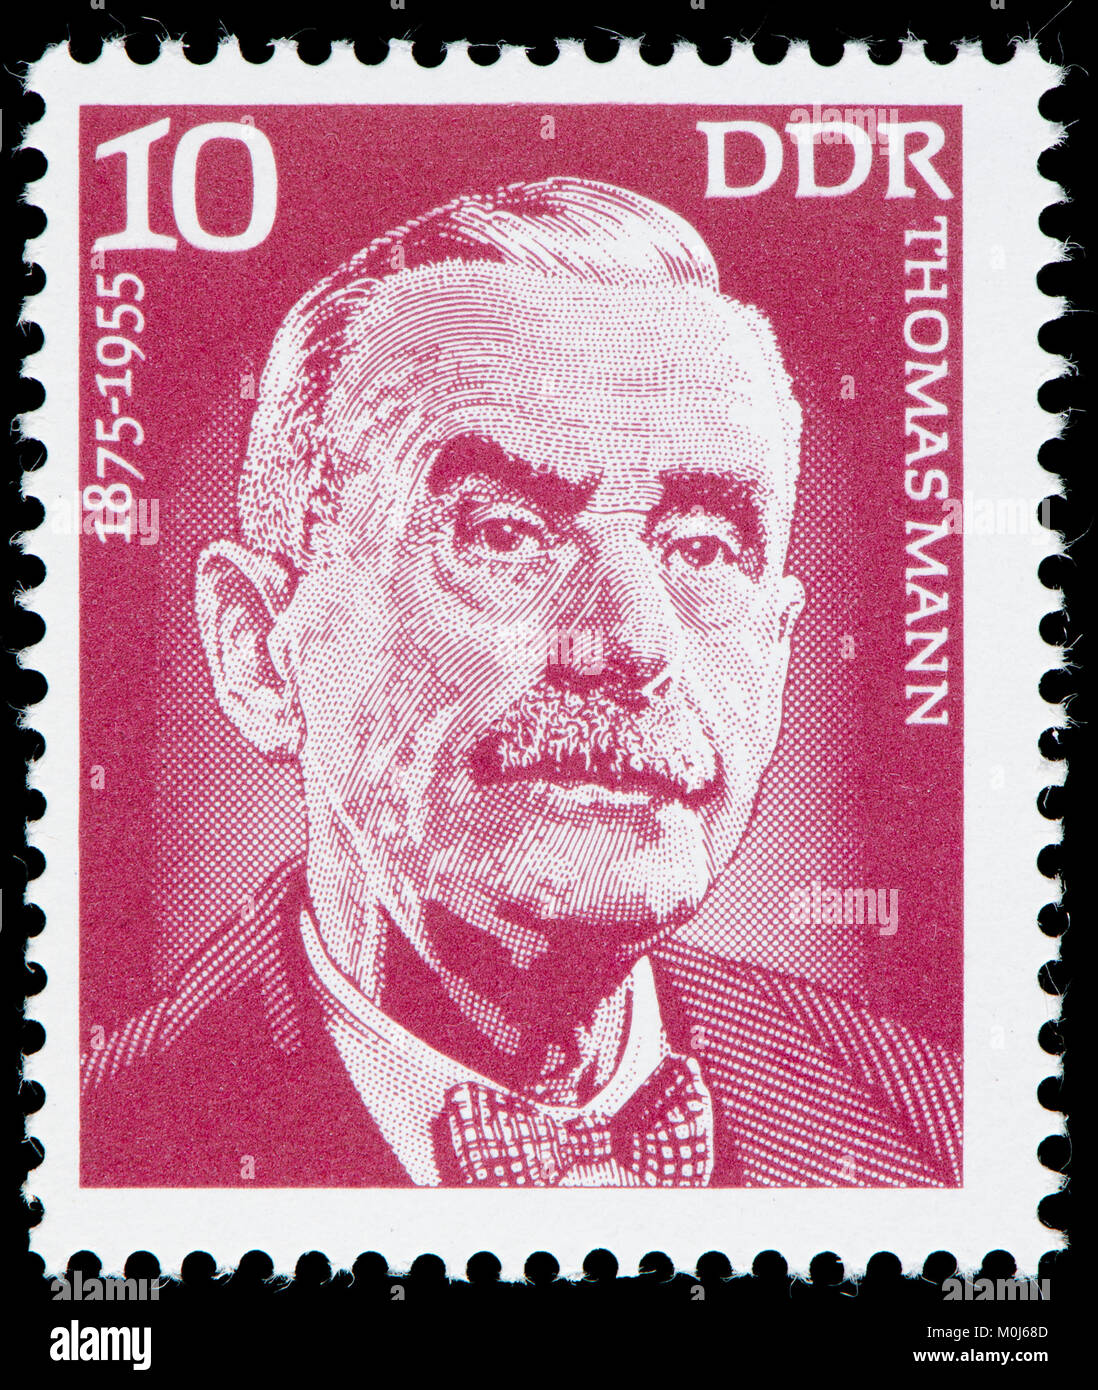 Ddr-Briefmarke (1975): Thomas Mann (1875 - 1955) Der deutsche Schriftsteller, kurze Geschichte Schriftsteller und sozialkritiker - 1929 Nobelpreis für Literatur l Stockfoto